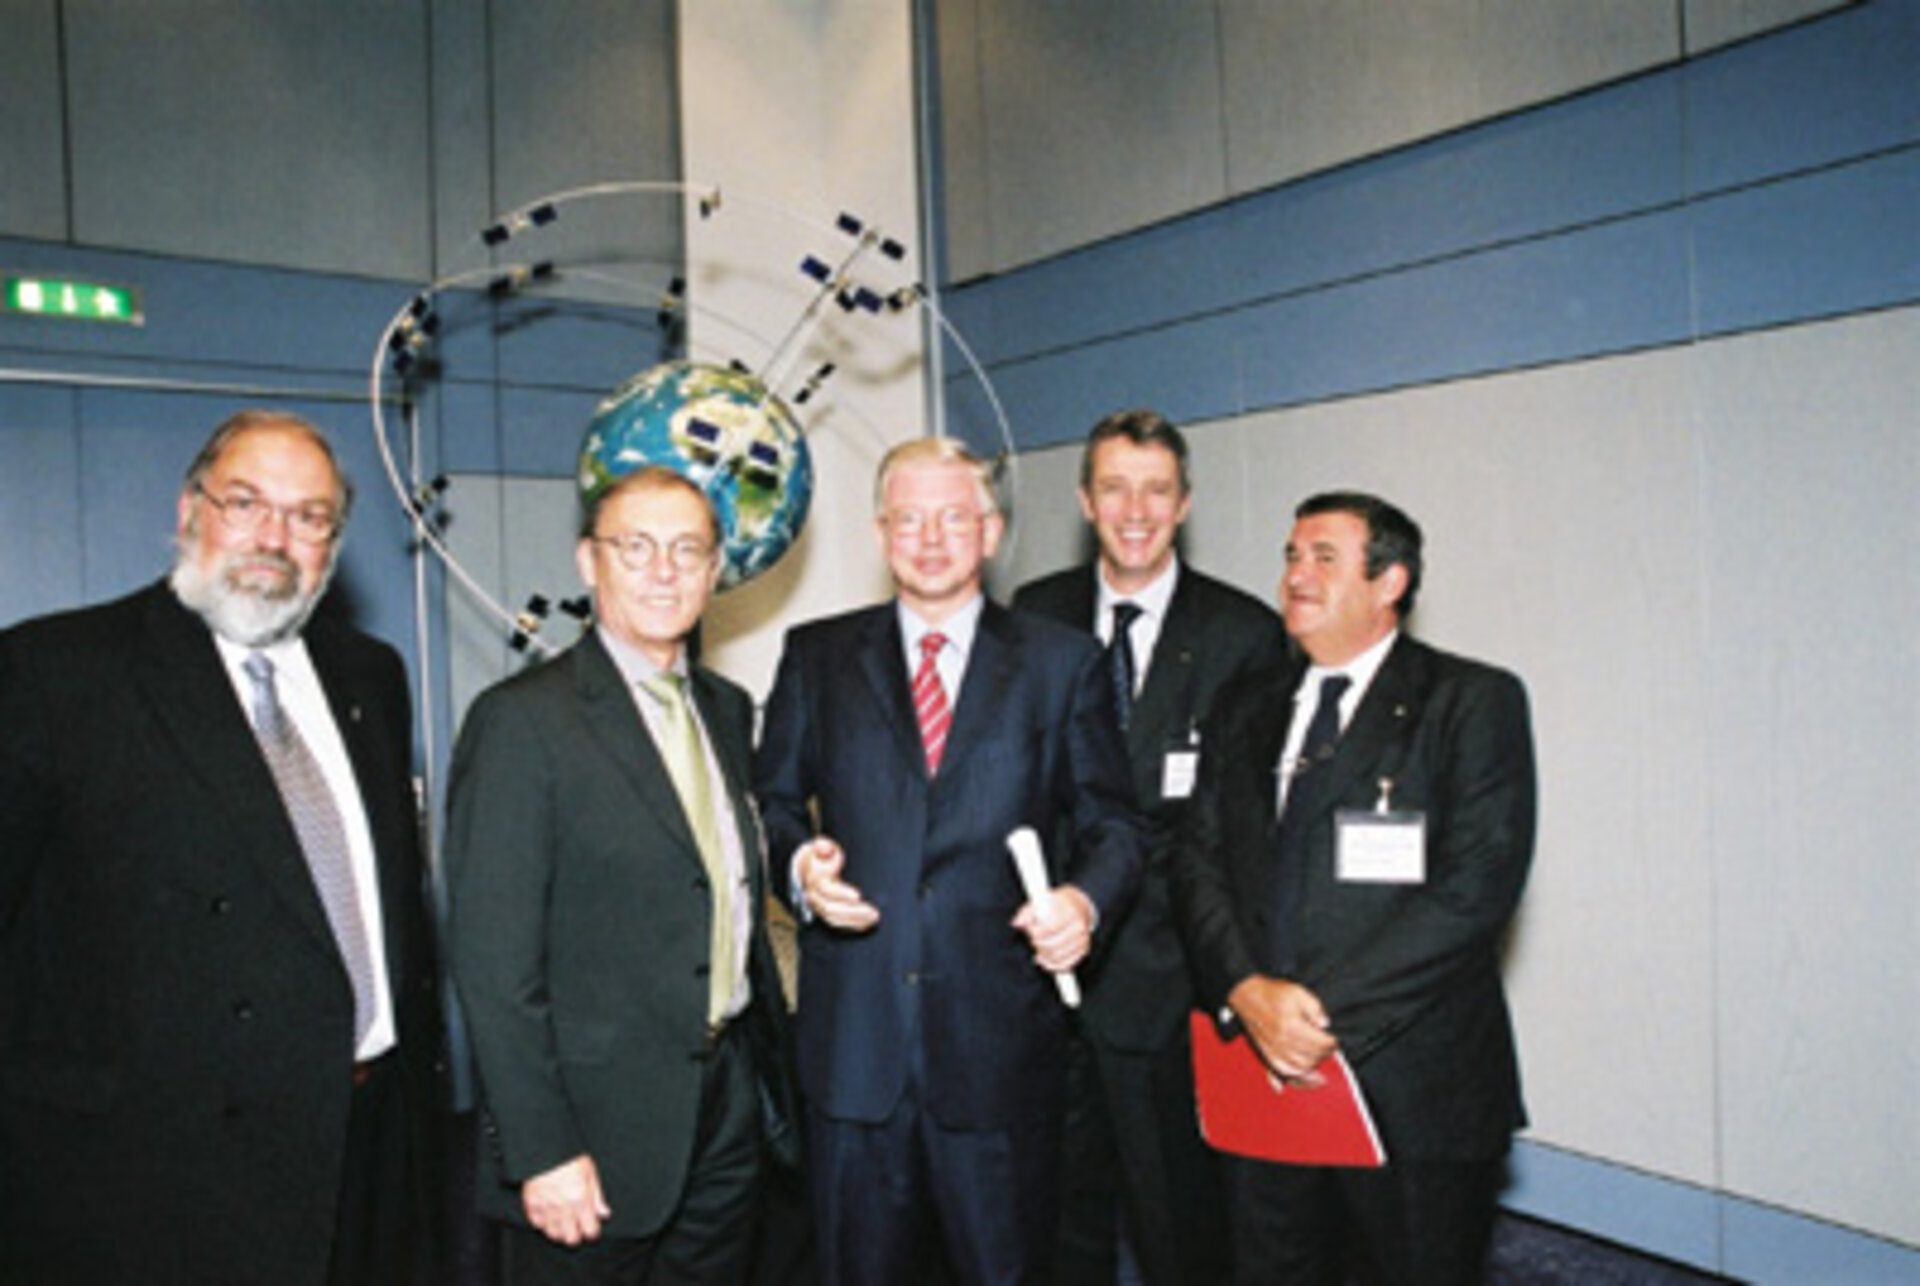 Prominente Politiker und Wissenschaftler zum Galileo-Informationstag im ESOC